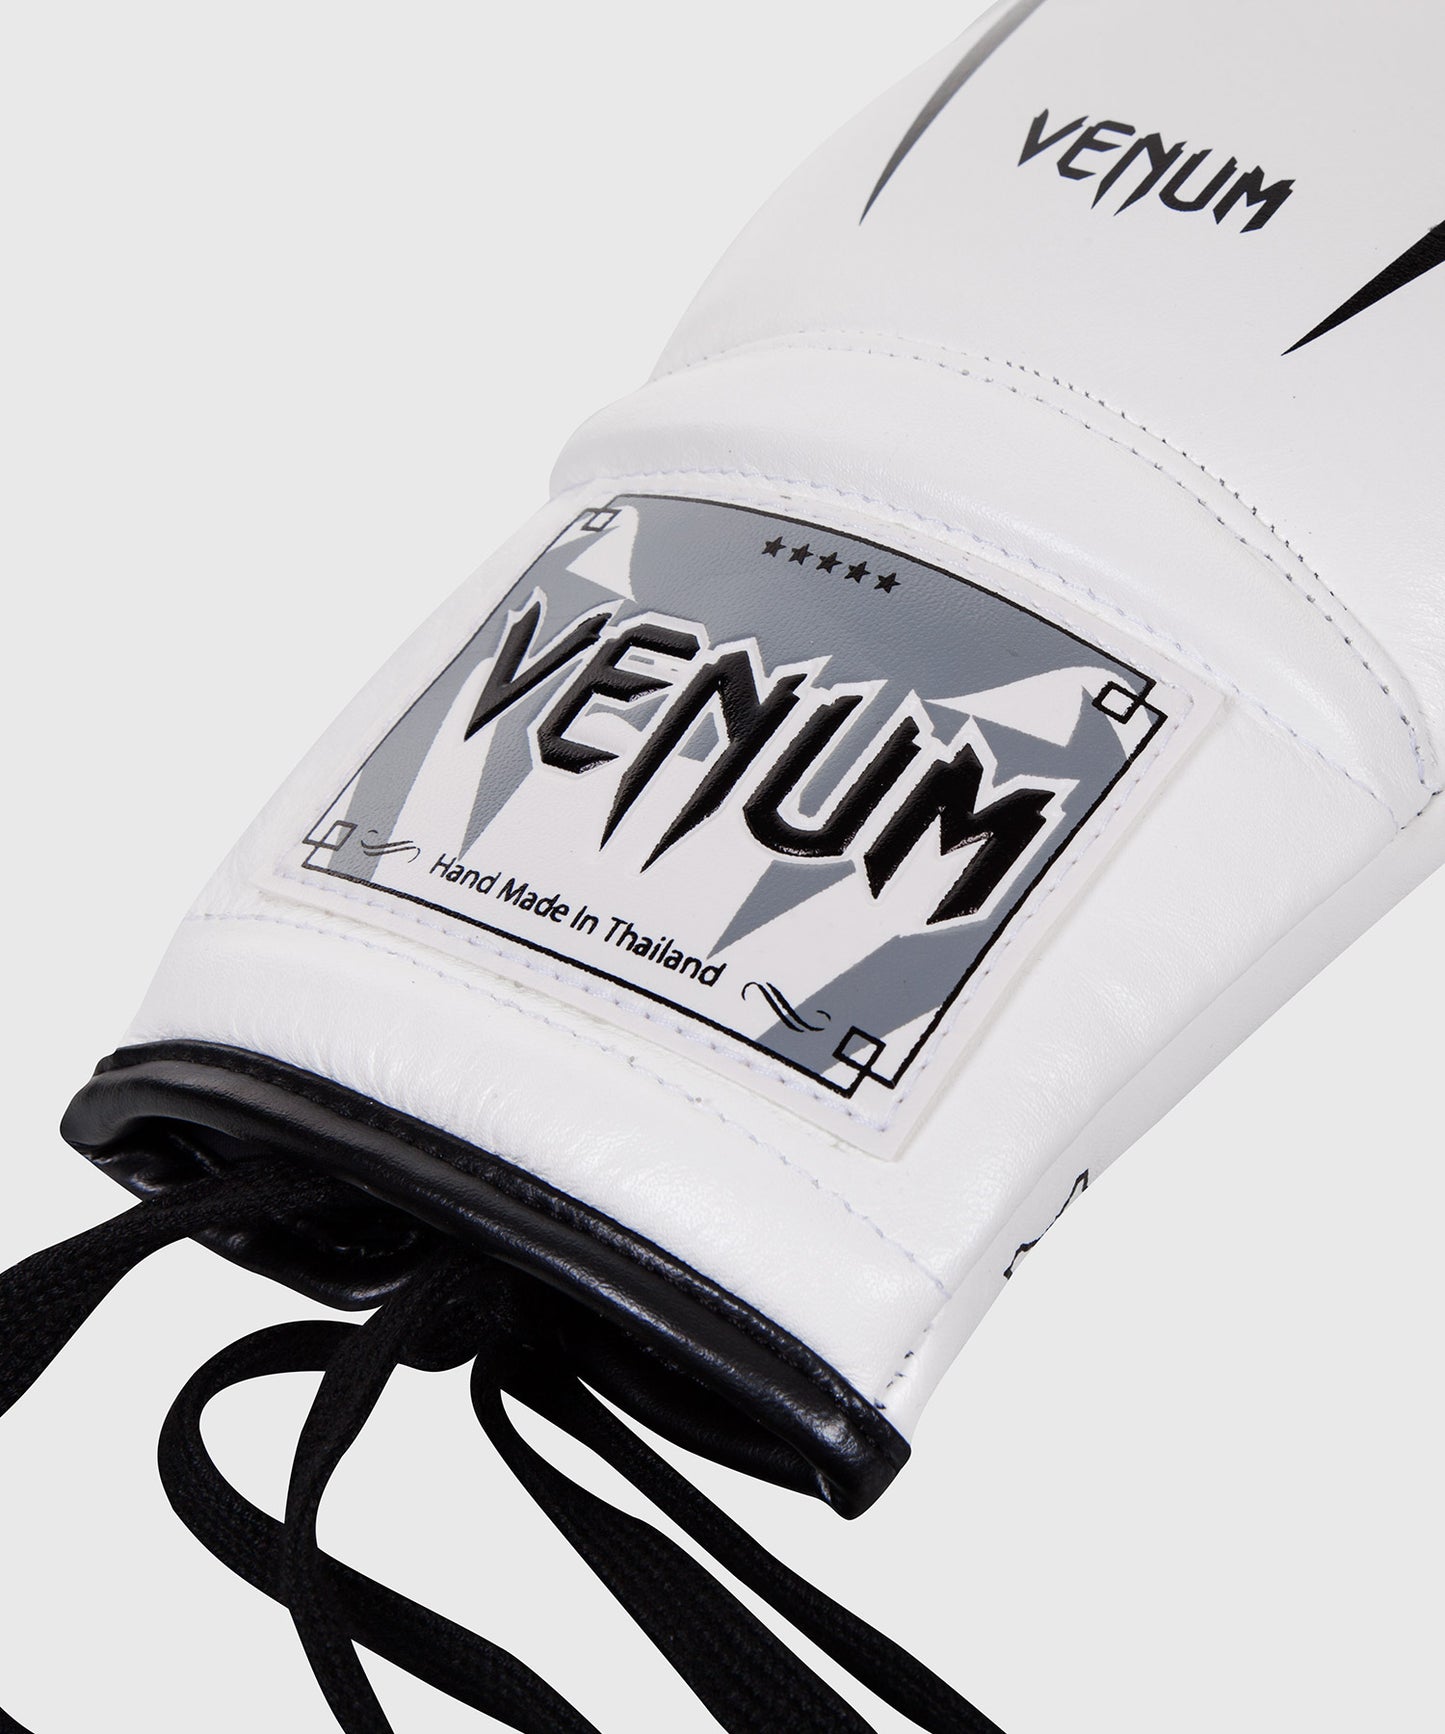 Venum Giant 3.0 Bokshandschoenen - nappaleer - met veters - Wit